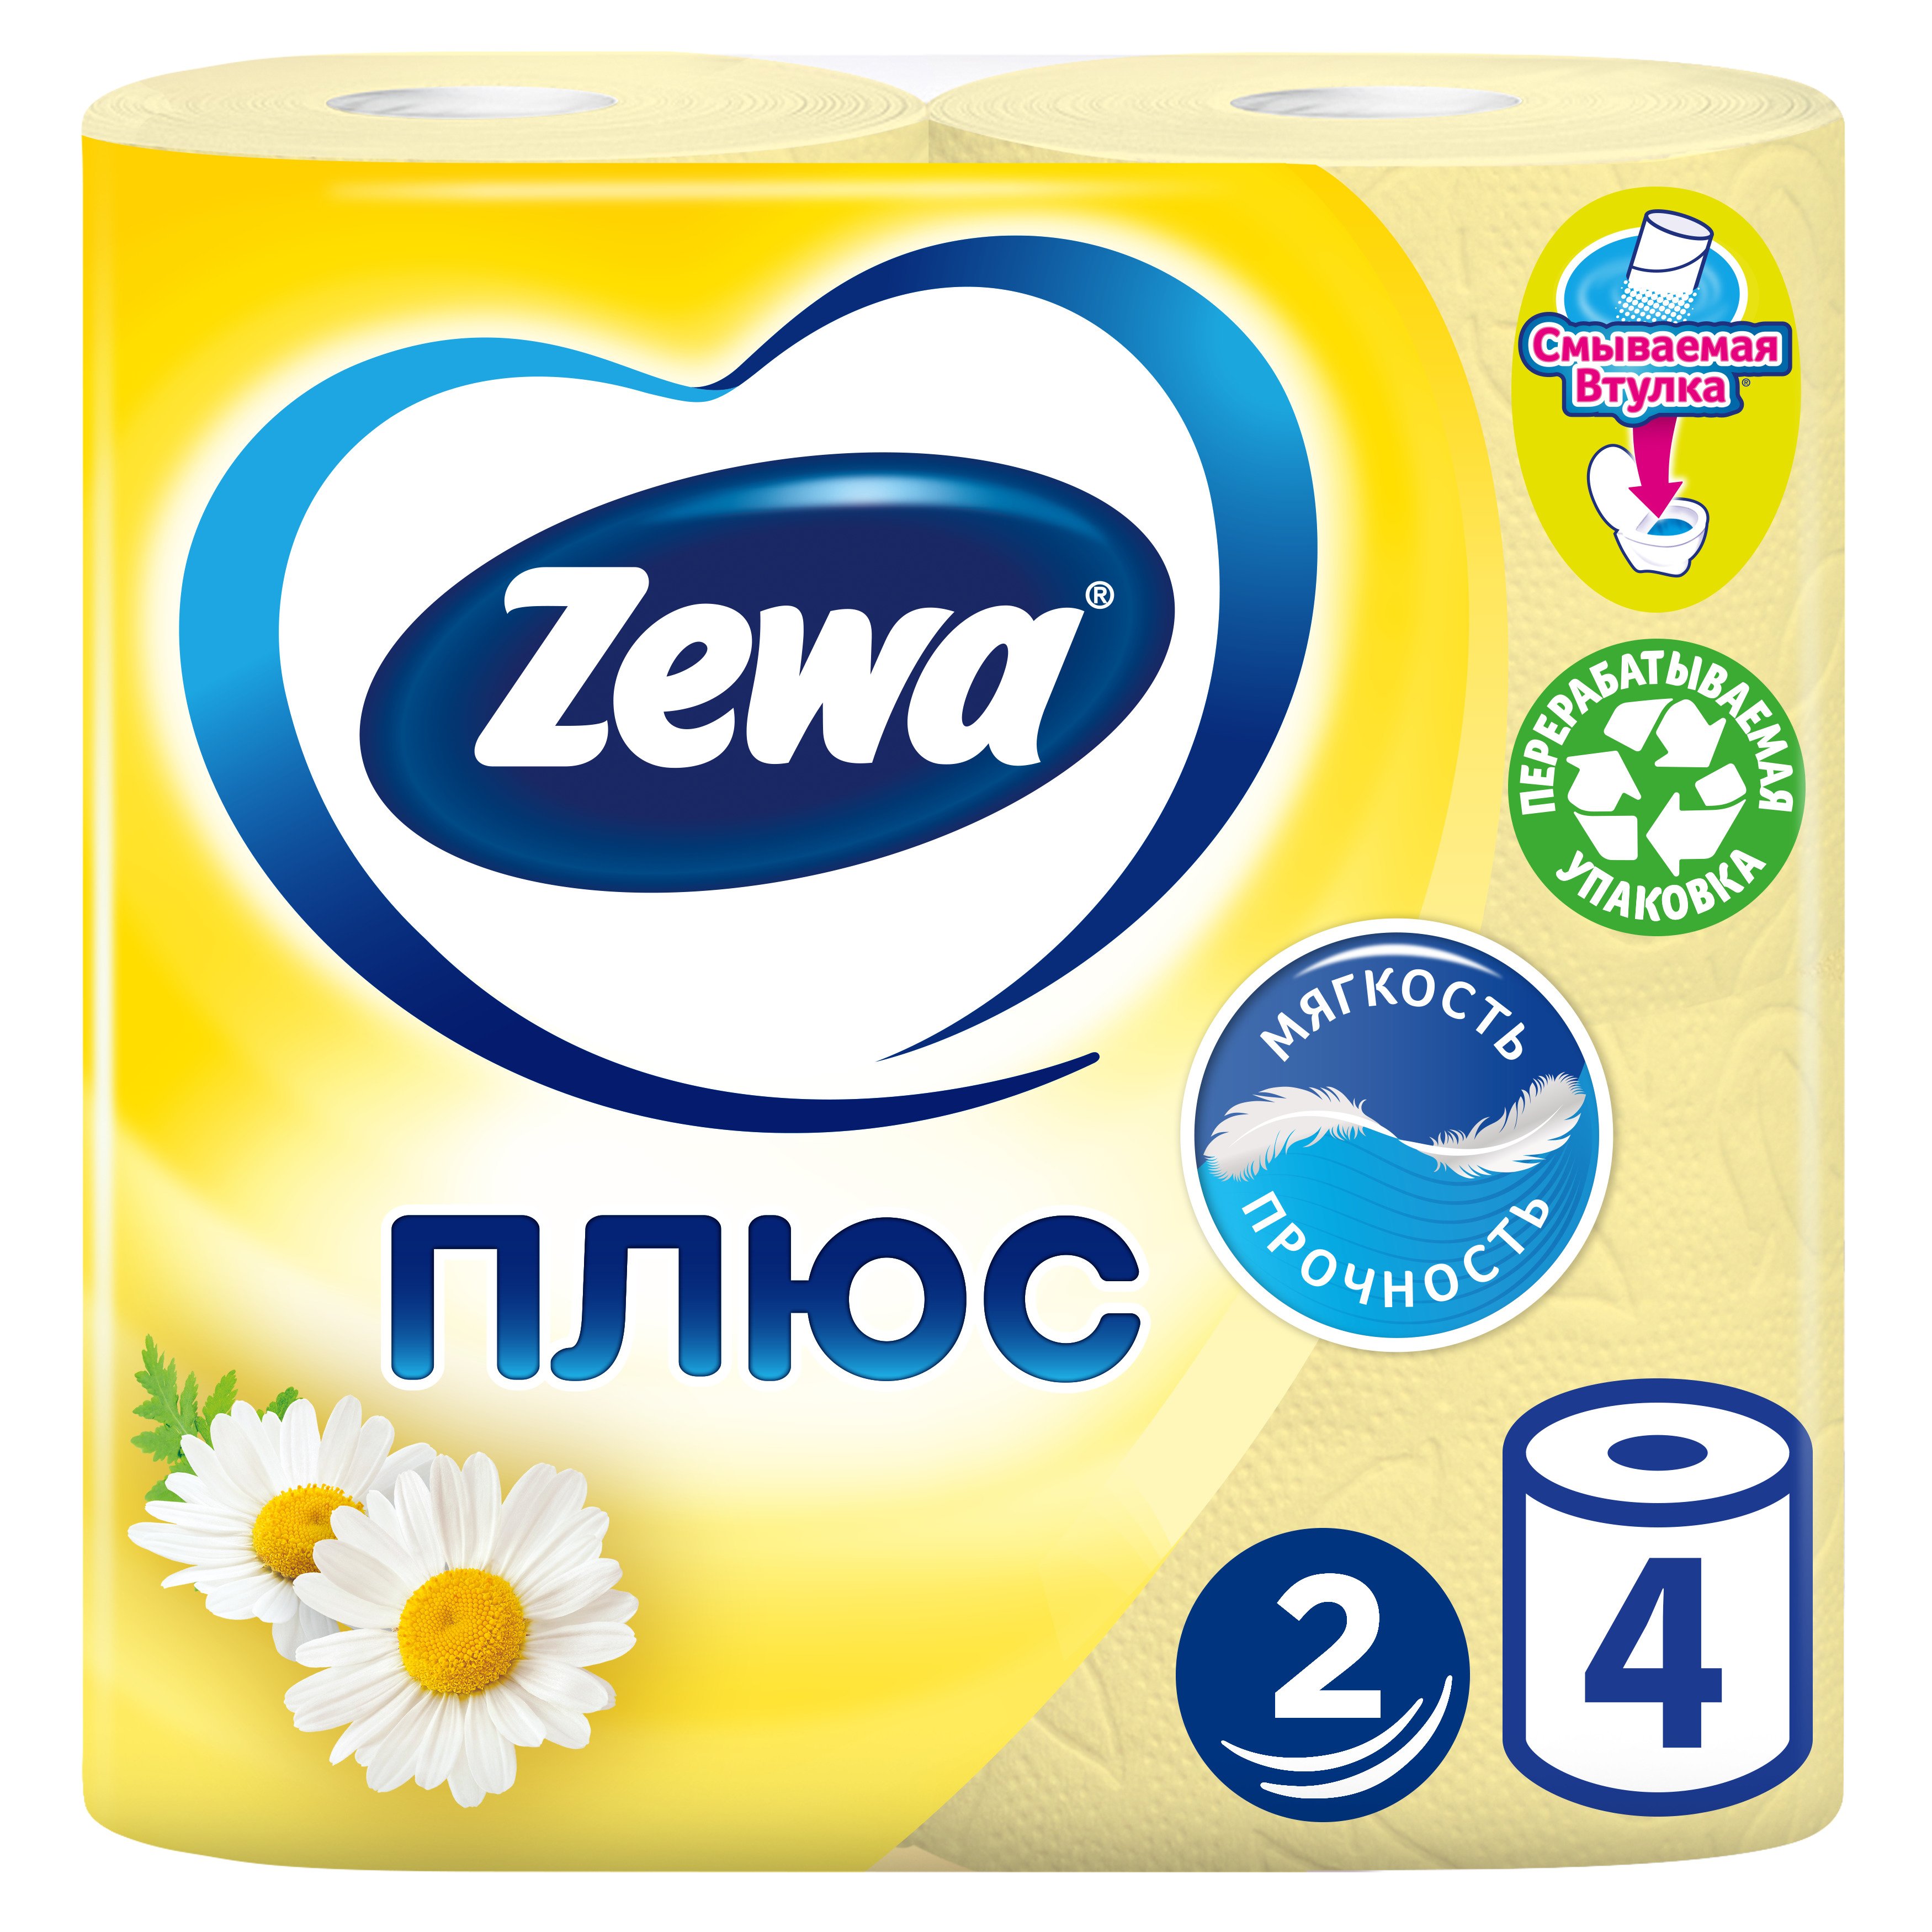 Двухслойная туалетная бумага Zewa Plus Ромашка, желтый, 4 рулона - фото 1